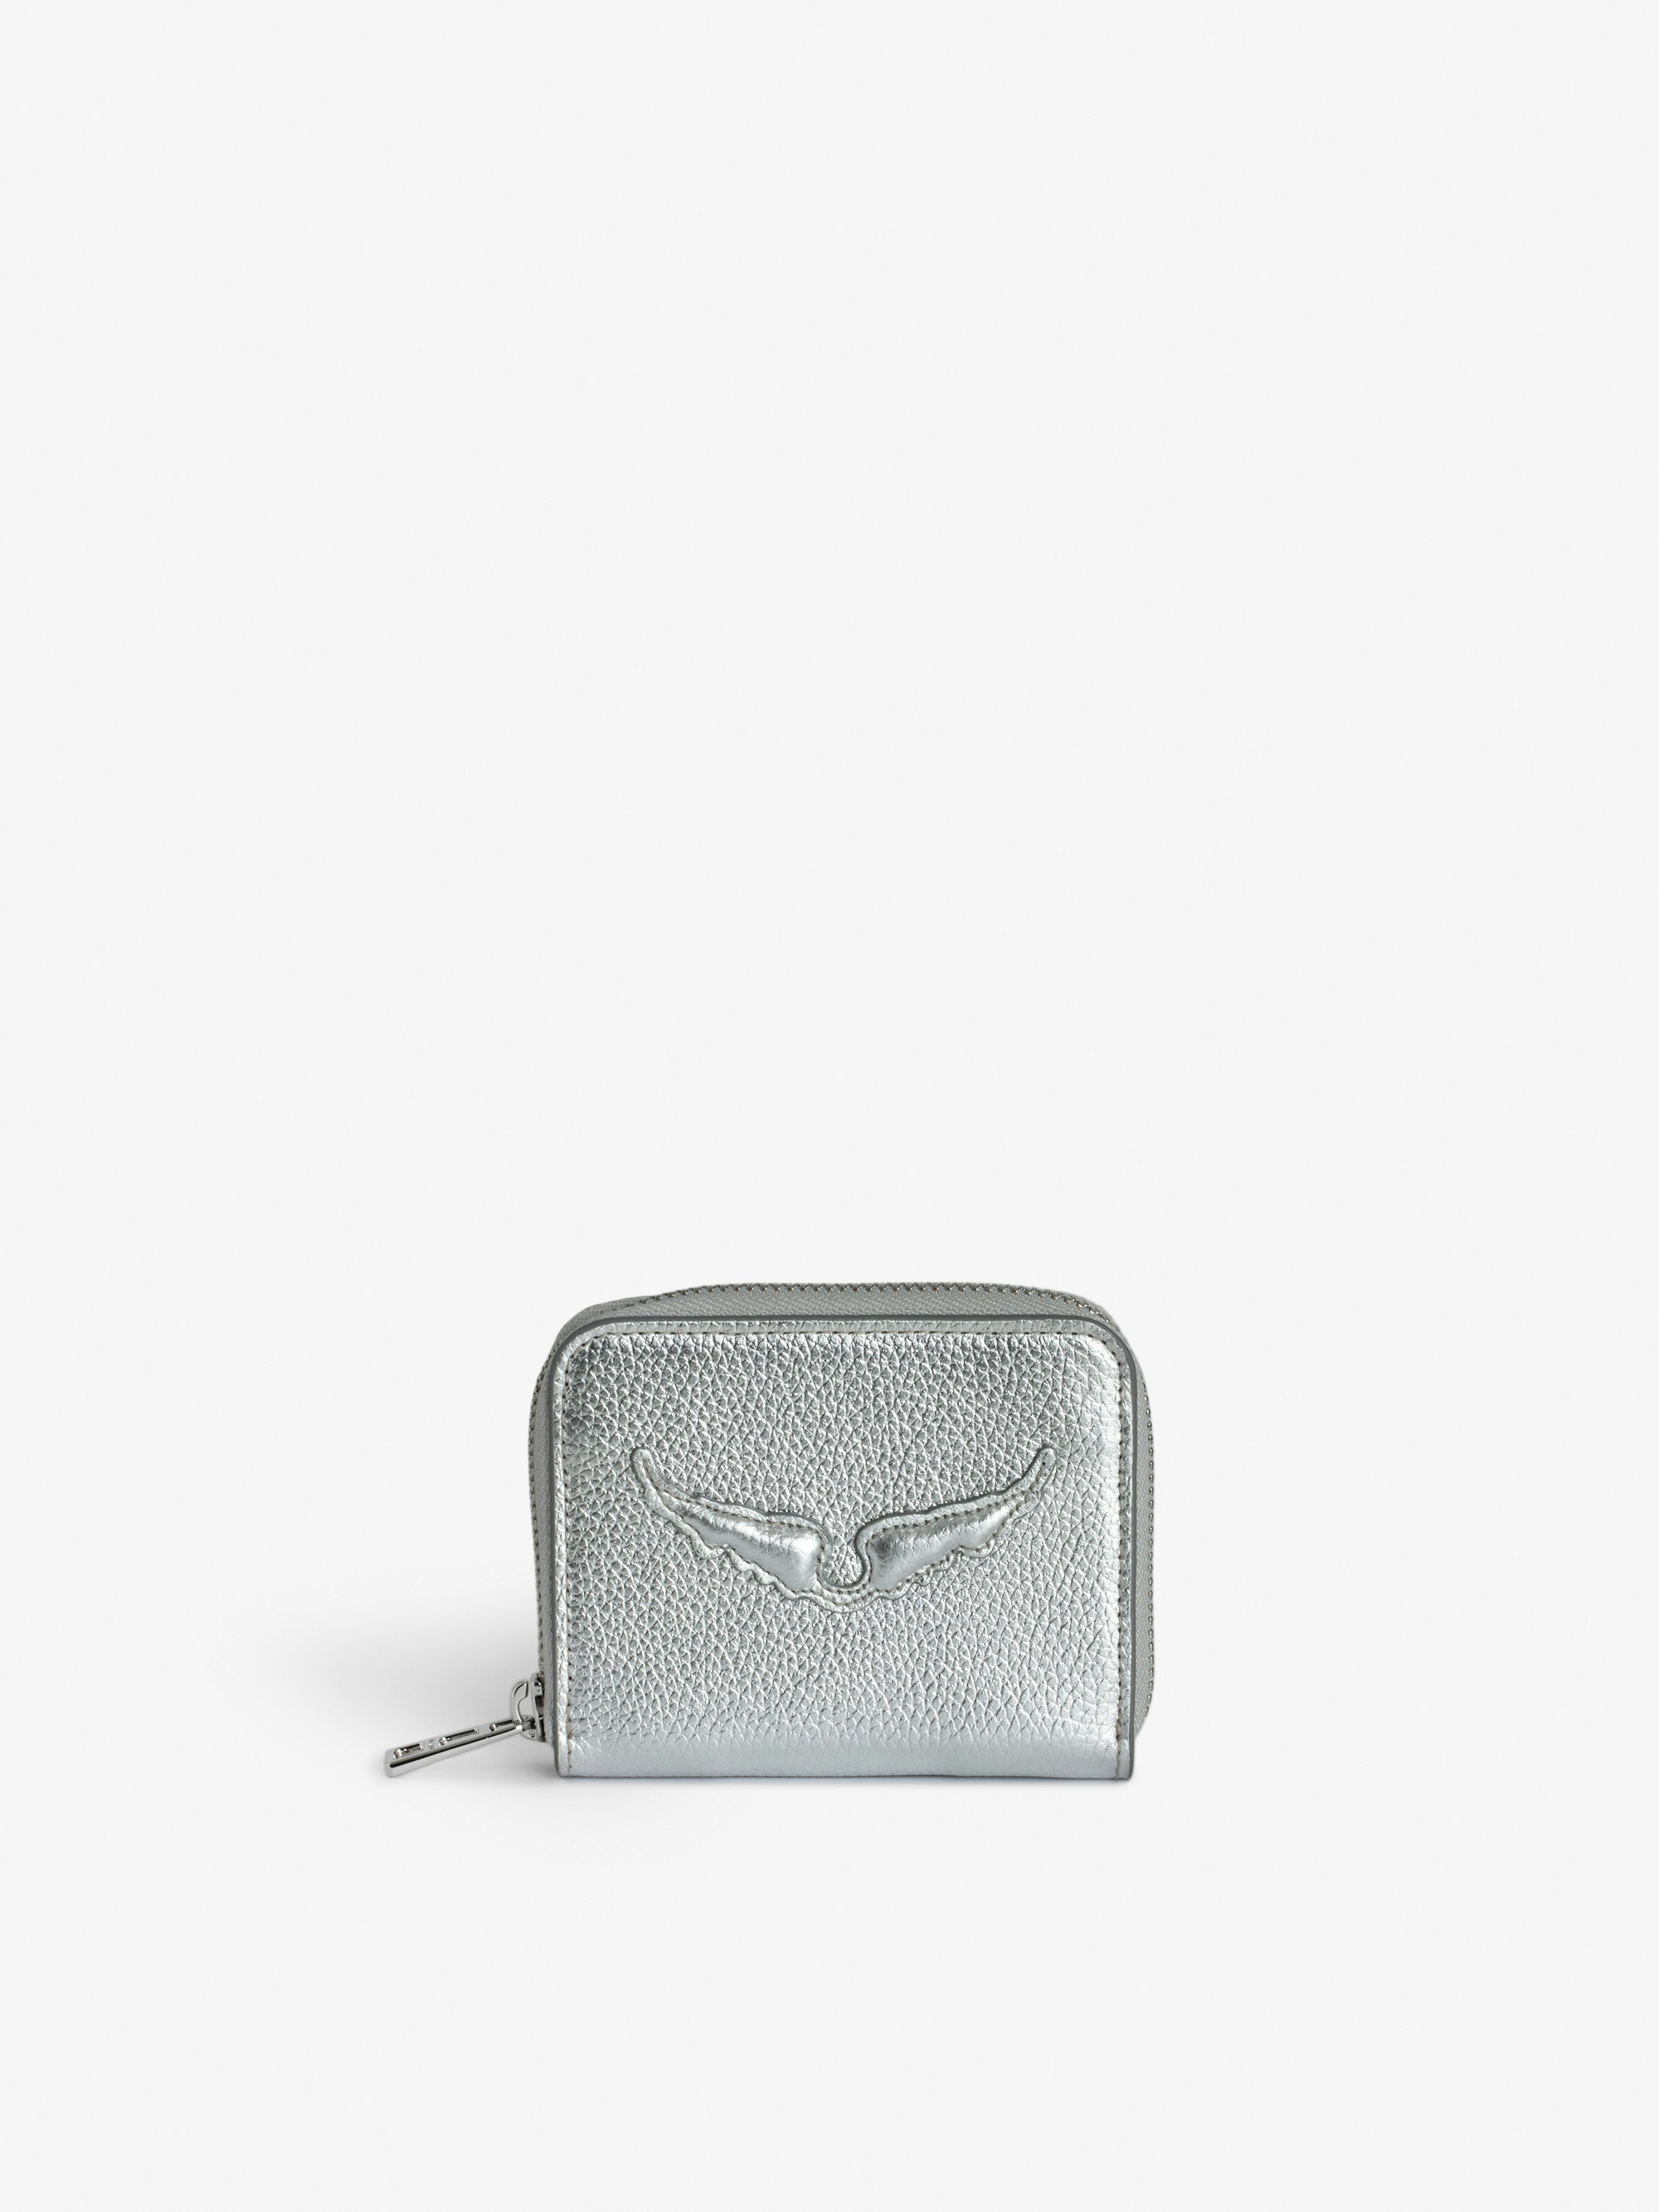 Portamonete Mini ZV - Portamonete in pelle granulata metallizzata color argento decorato con ali distintive in rilievo.